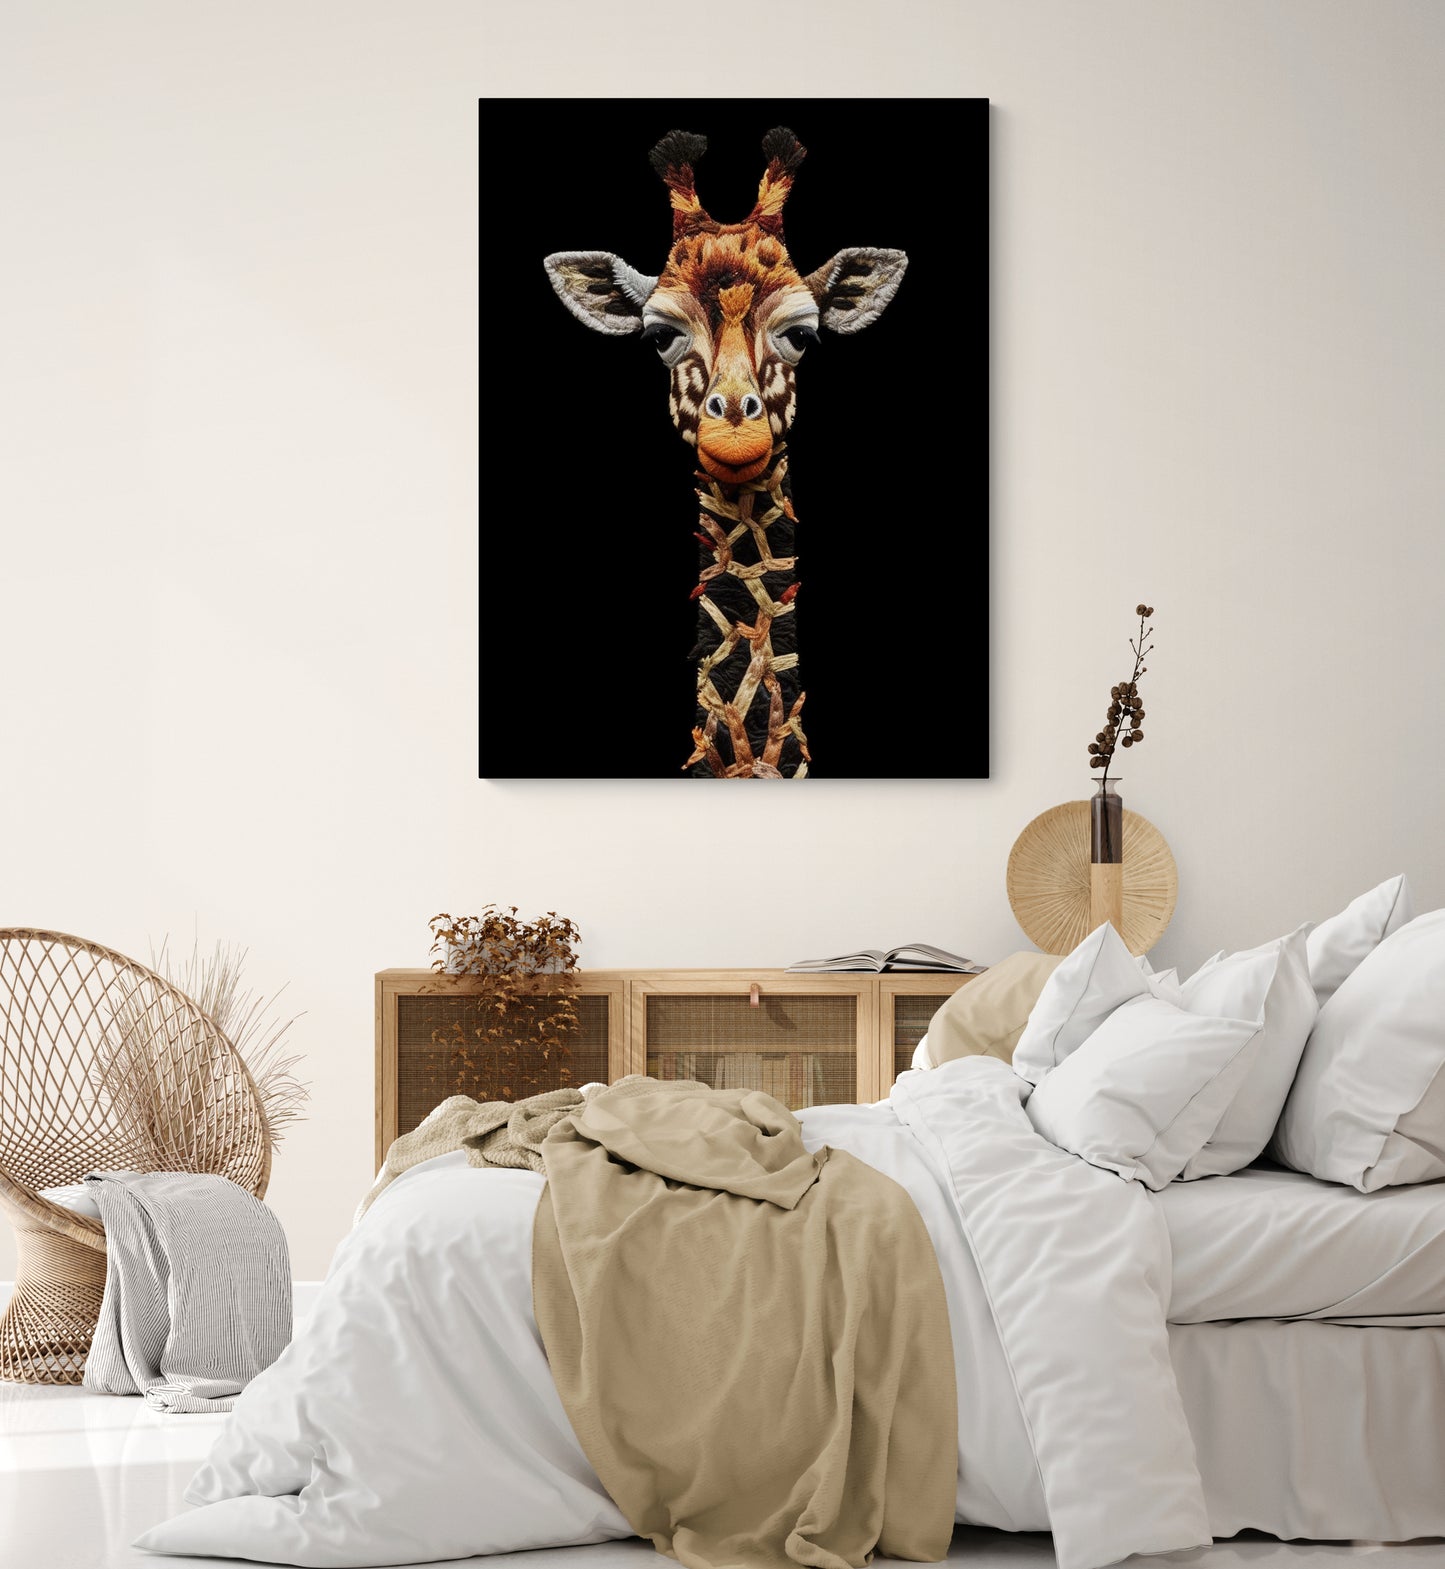 Toile girafe enrichit l'ambiance naturelle et douce d'une chambre adulte.